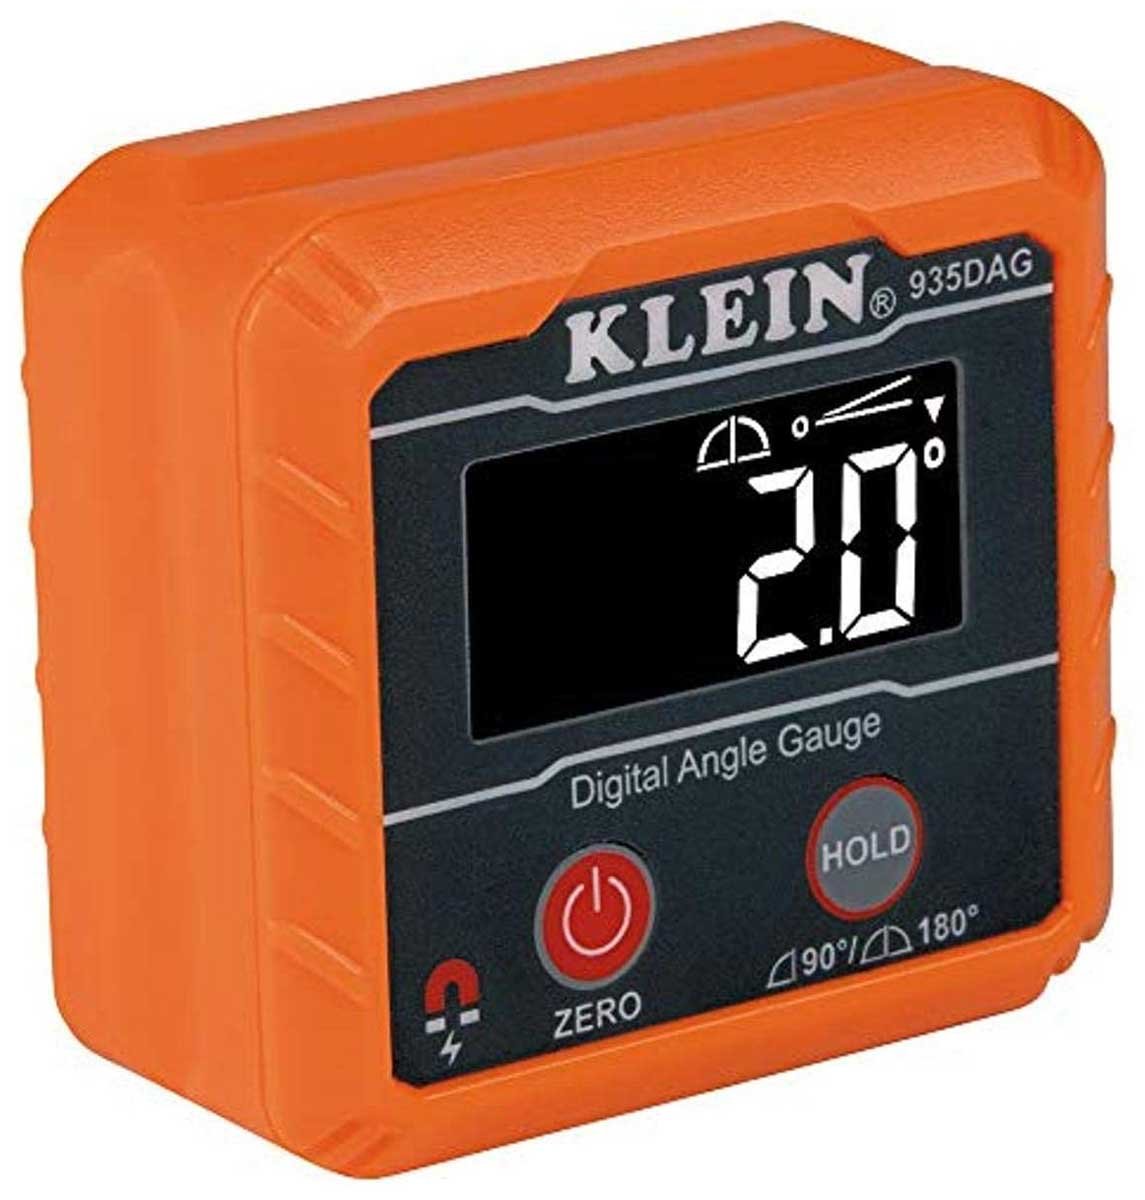 Klein Tools 935DAG Pocket Size Digital Level and Angle Gauge- Best Digital Level